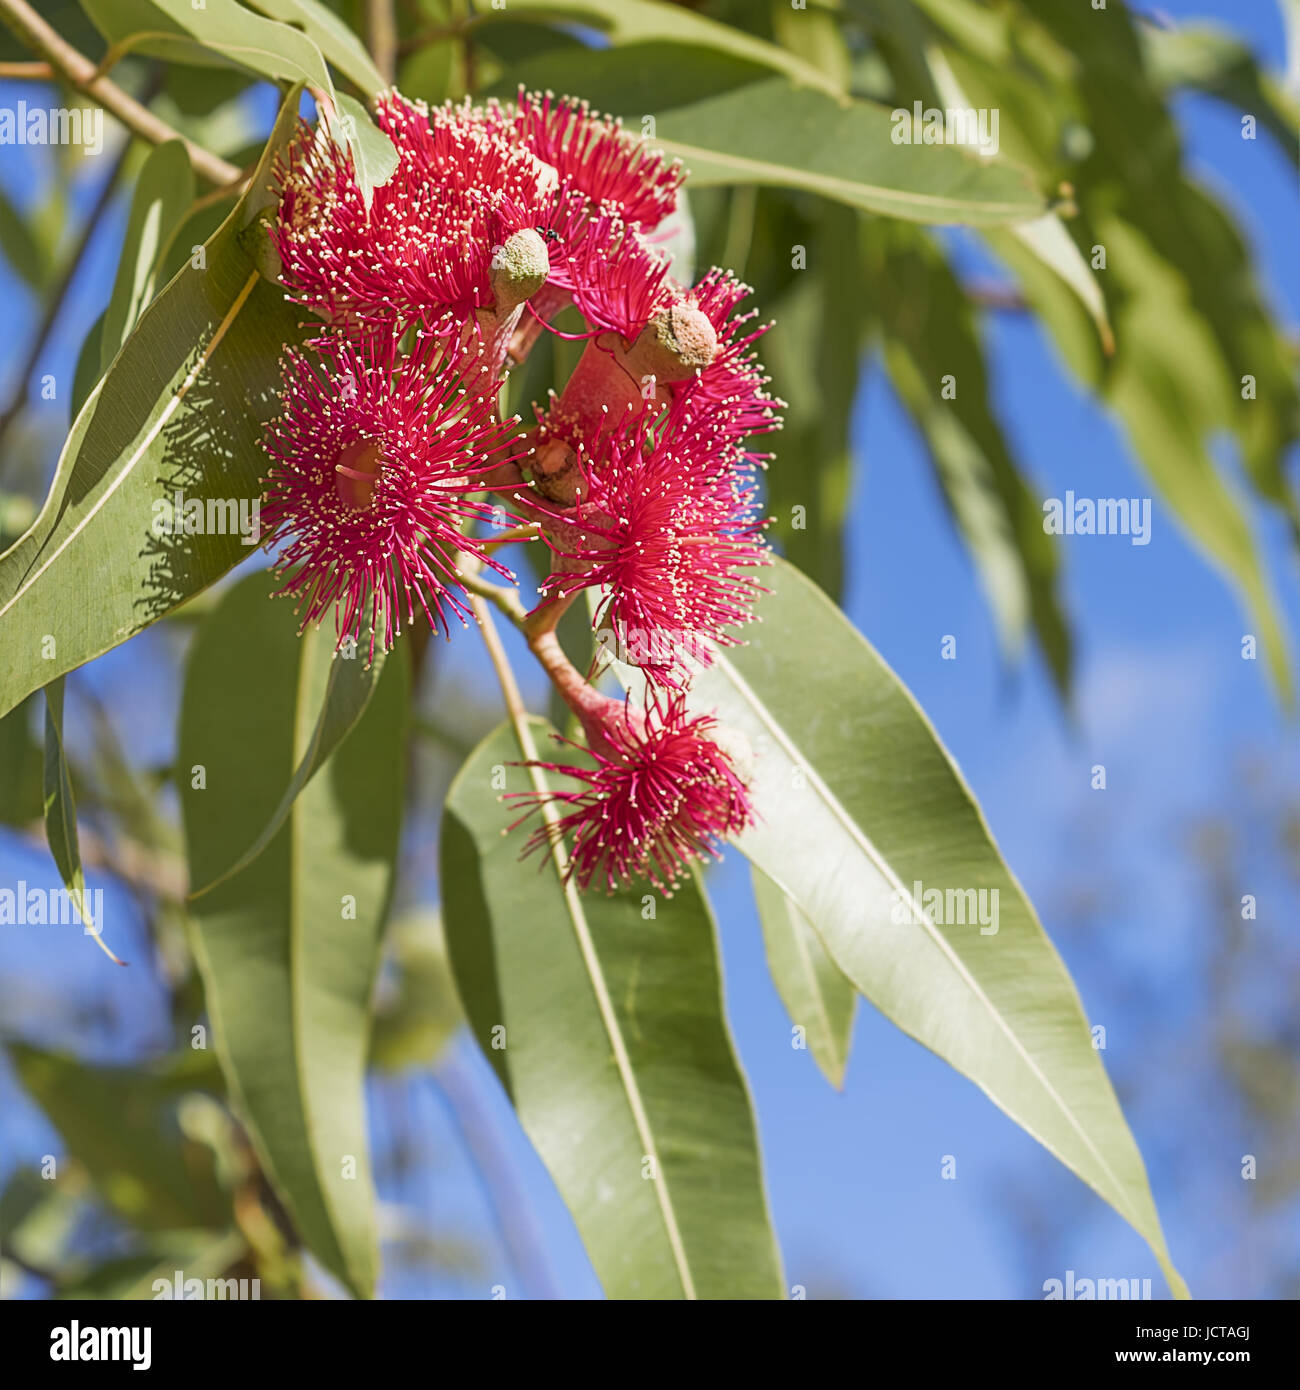 Australian icónica de eucalipto rojo flores con goma de mascar hojas verdes y cielo azul cerca del fondo en formato cuadrado Foto de stock